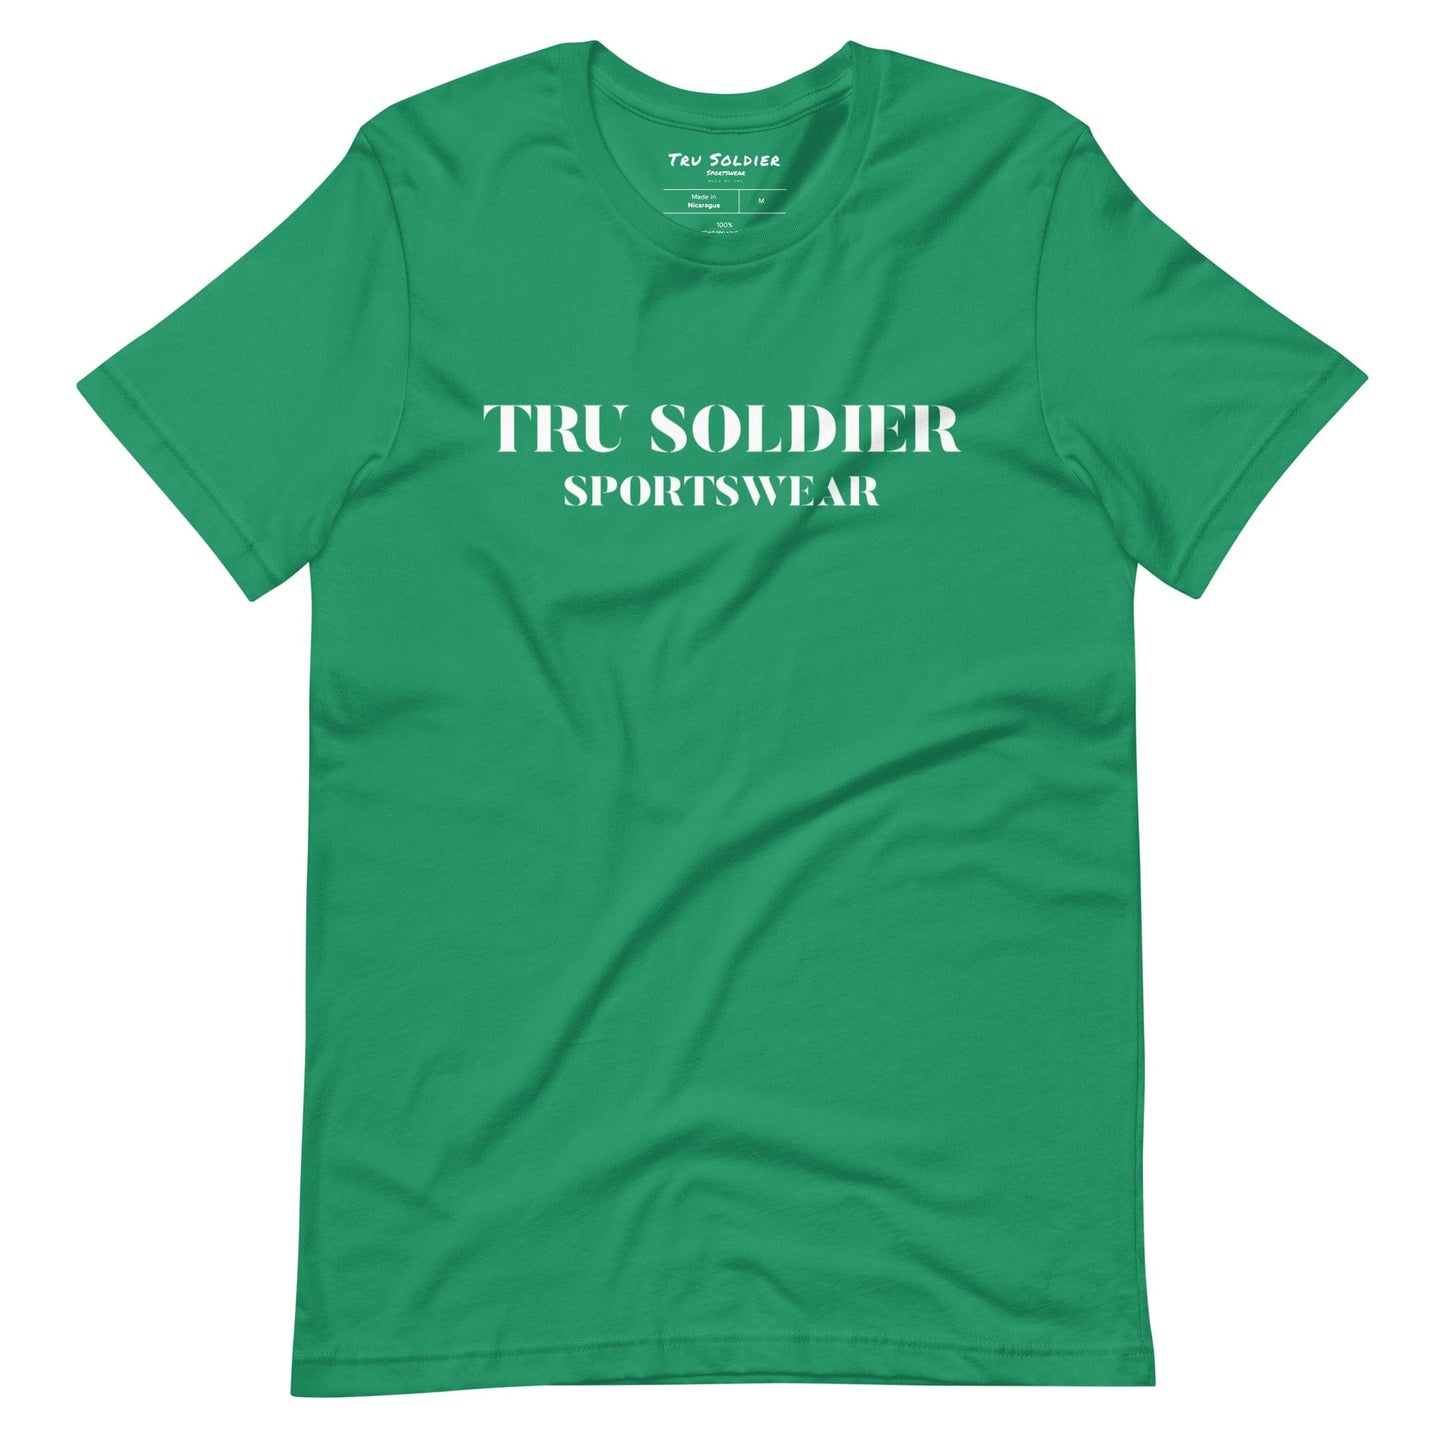 Tru Soldier Sportswear  Kelly / XS Tru Soldier Sportswear t-shirt